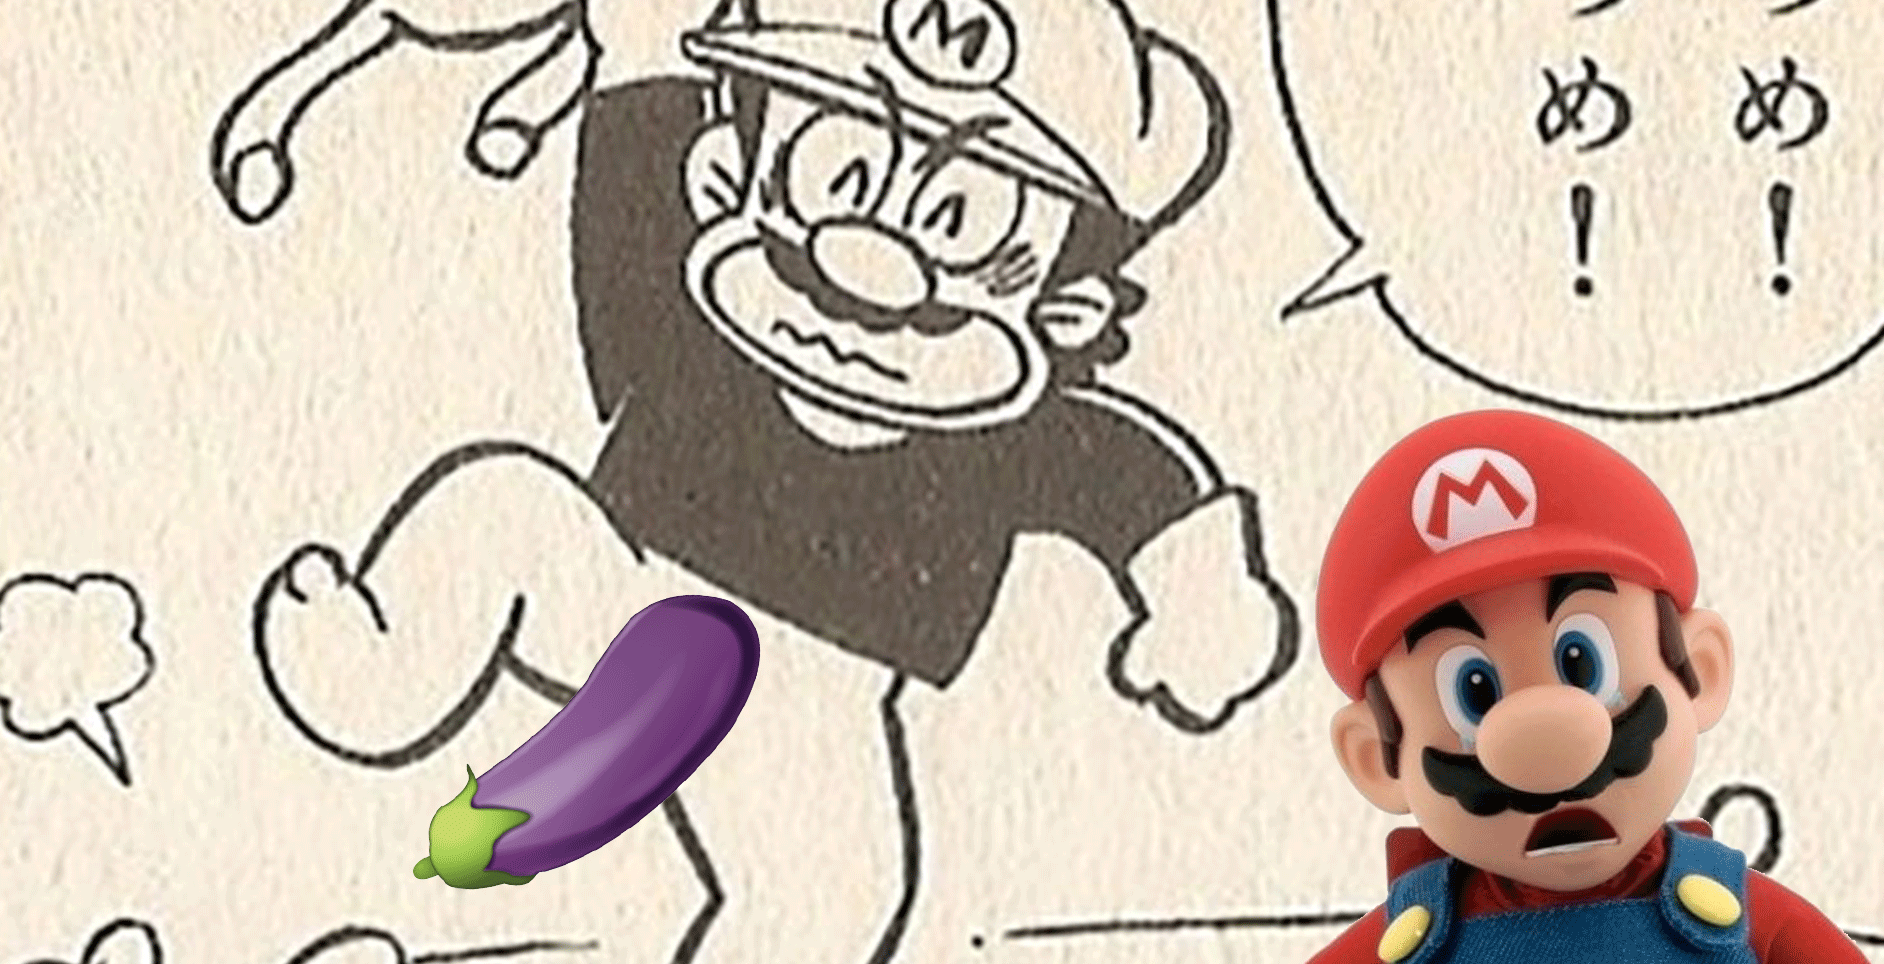 Marios cock